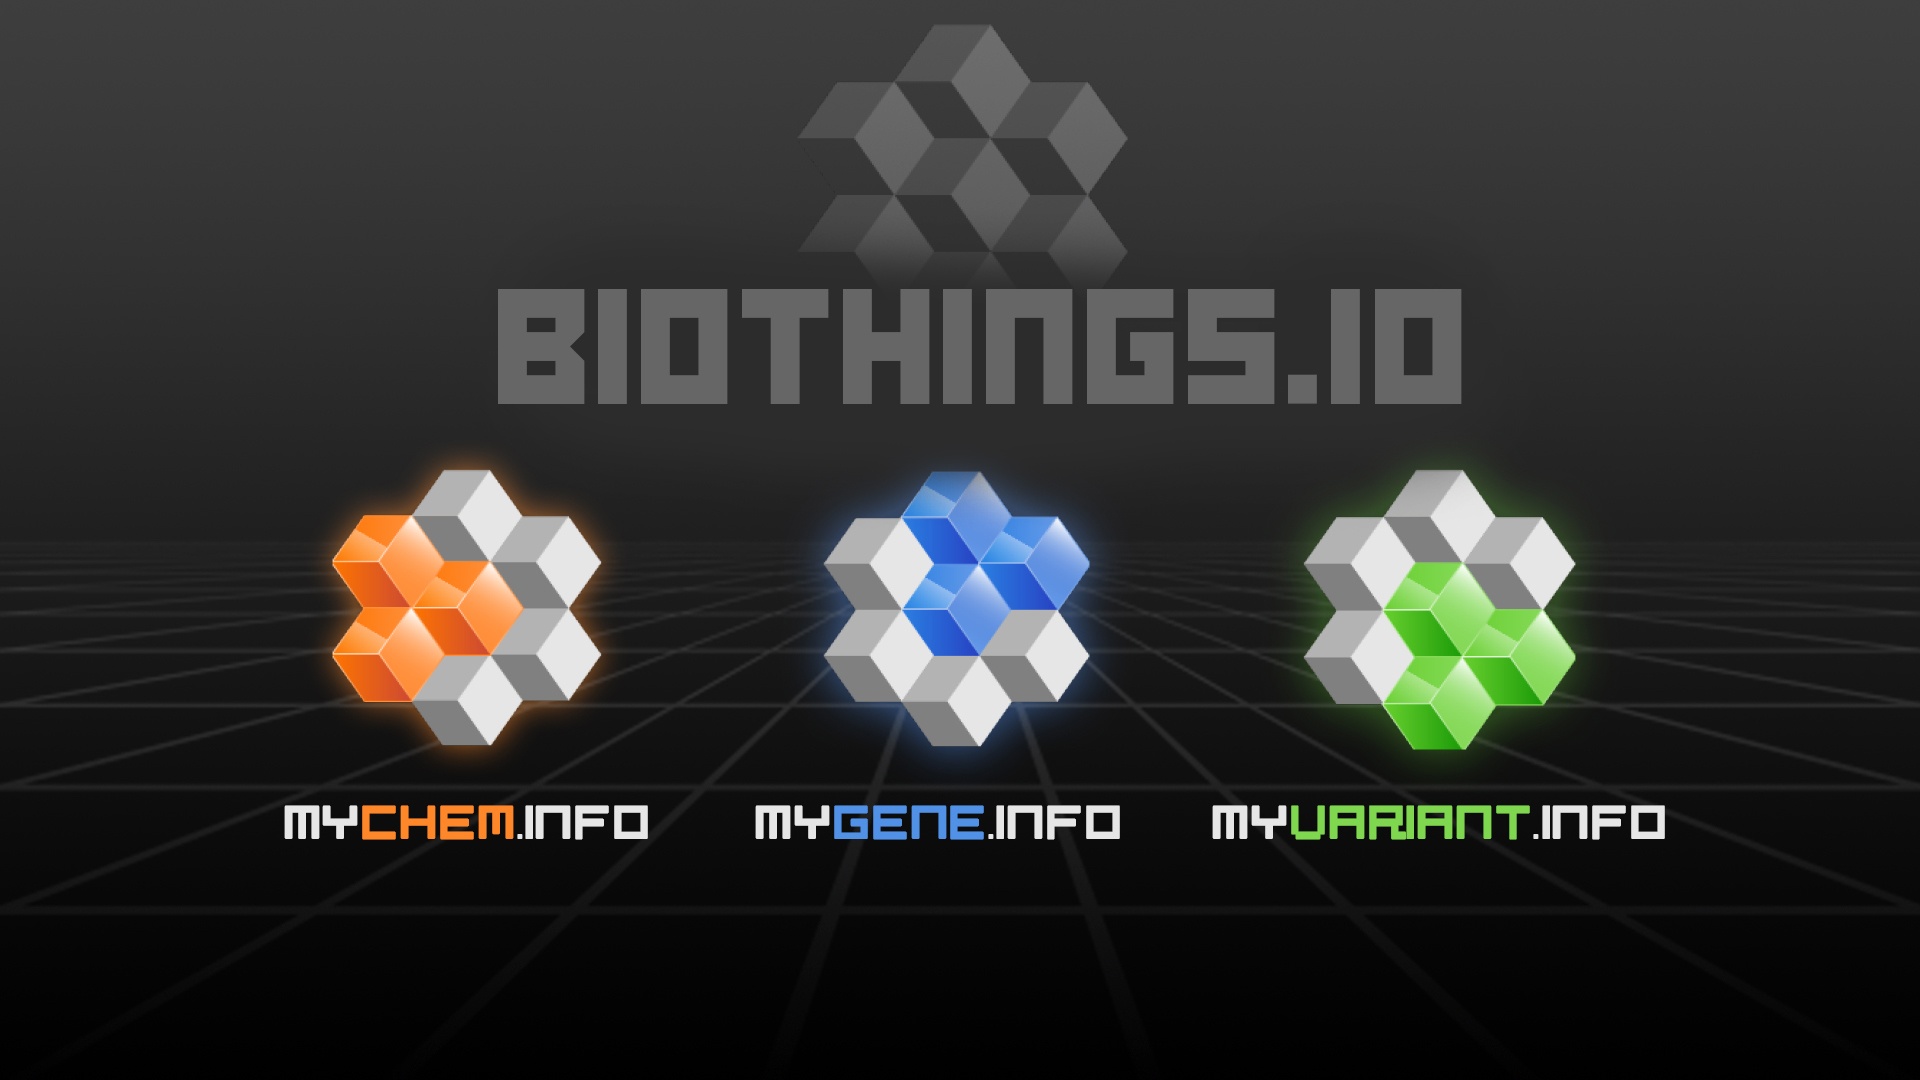 image of new biothings logo